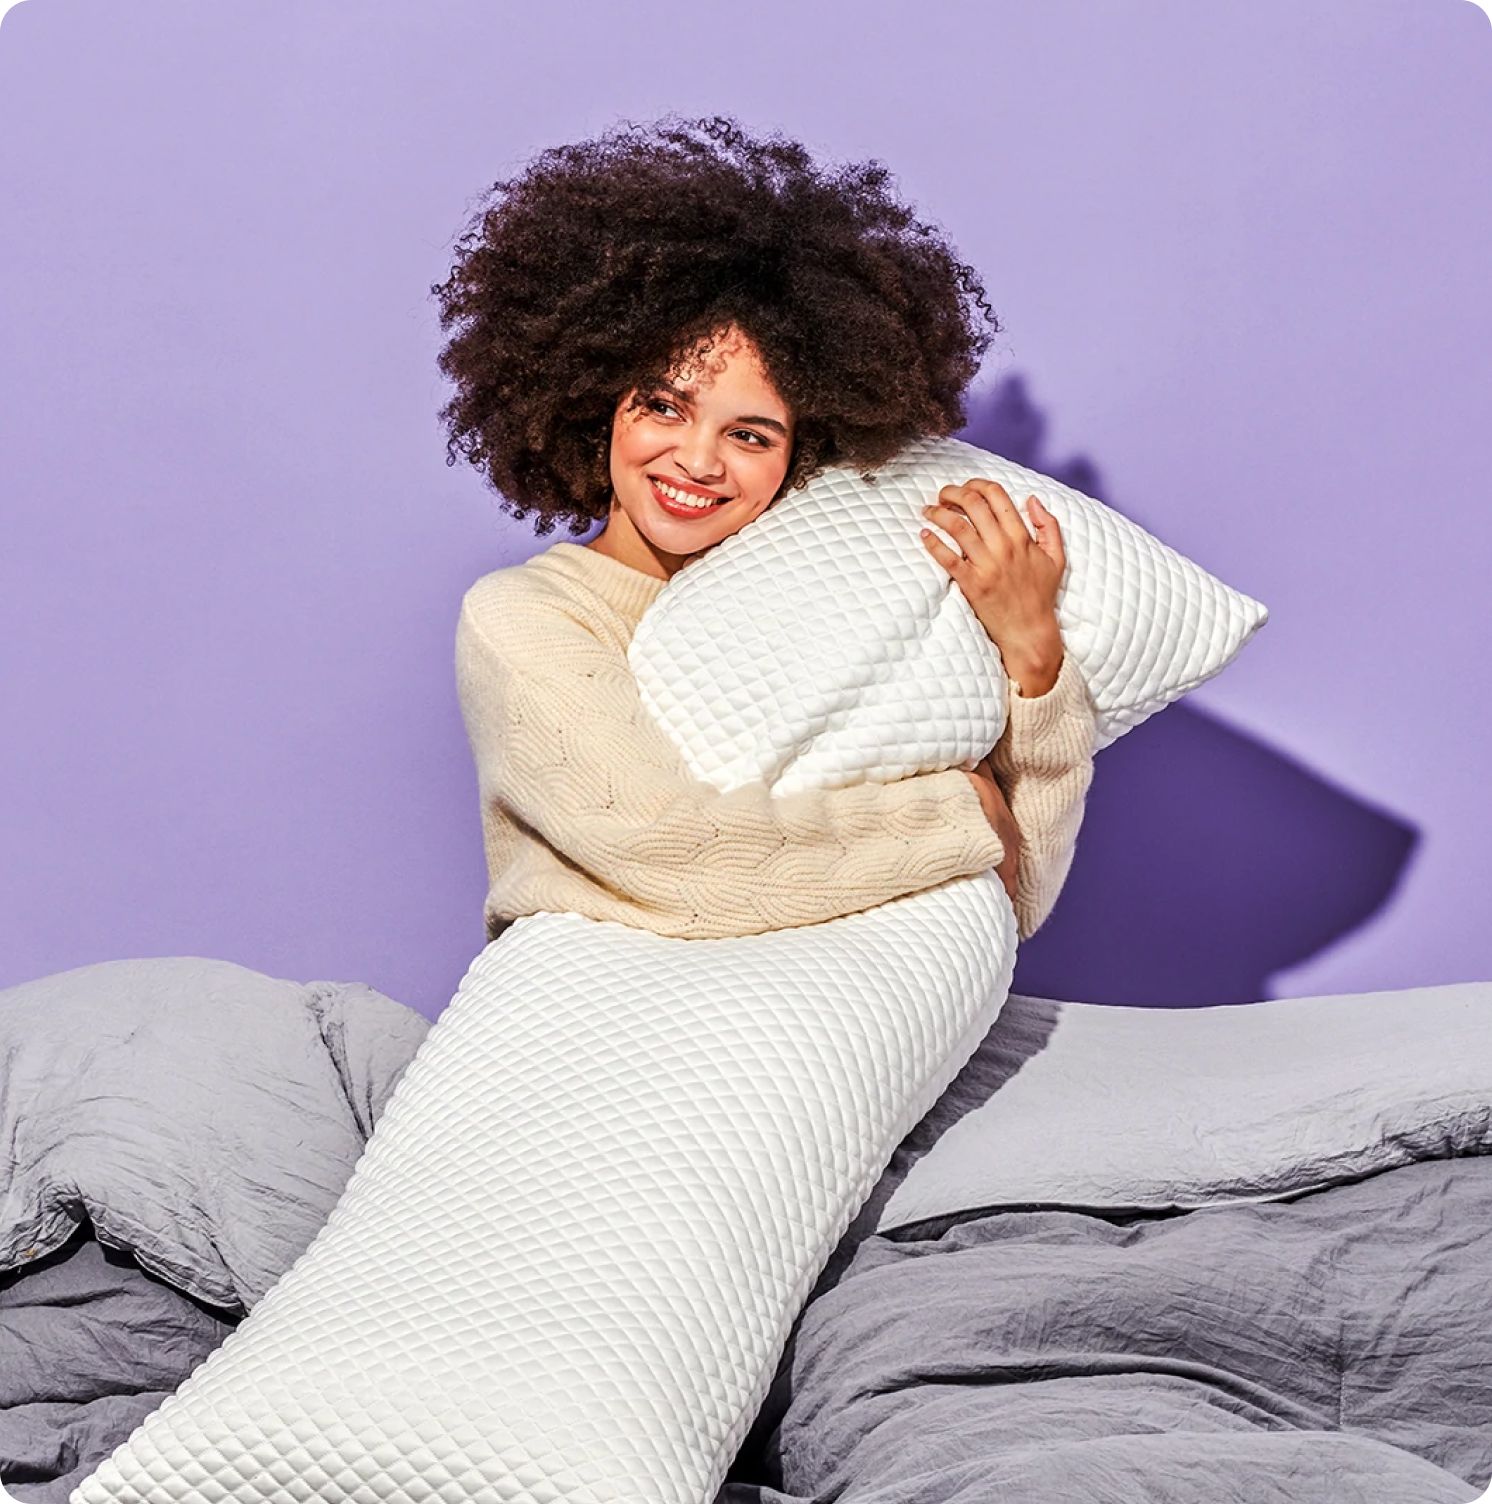 Полноценный и здоровый сон: 5 лучших подушек для беременных 2023